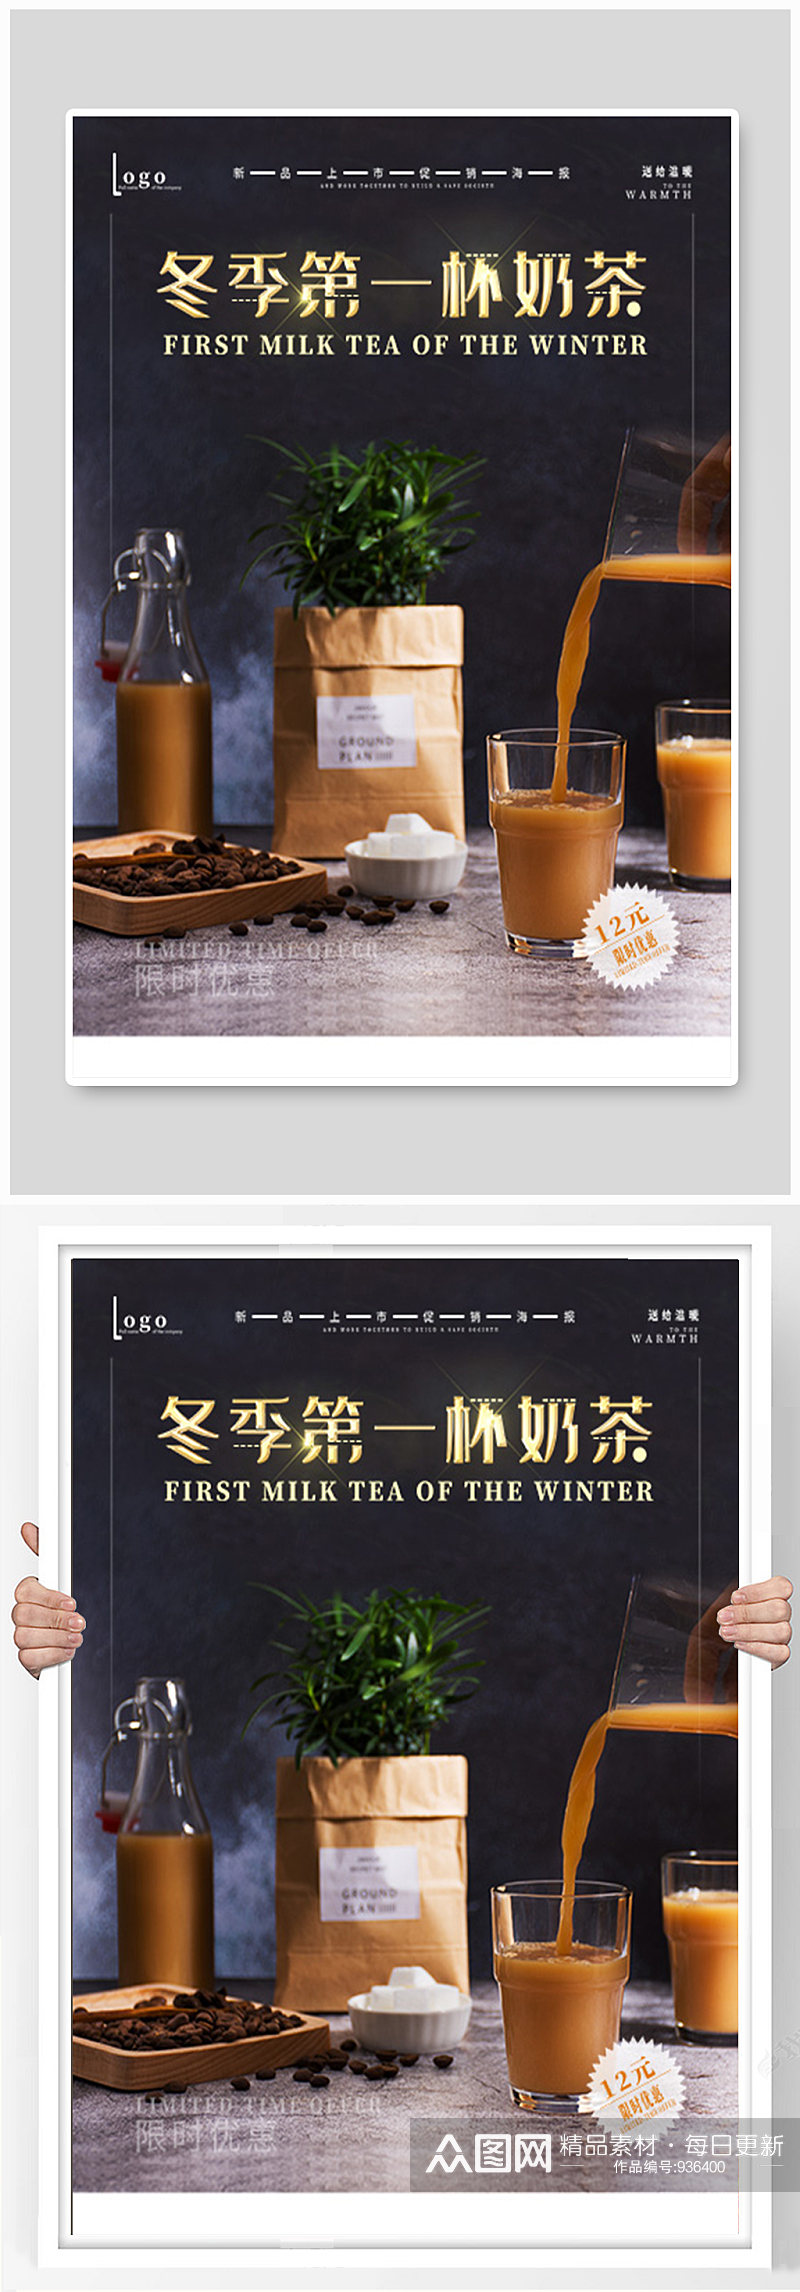 咖啡饮料店新品上市宣传海报素材